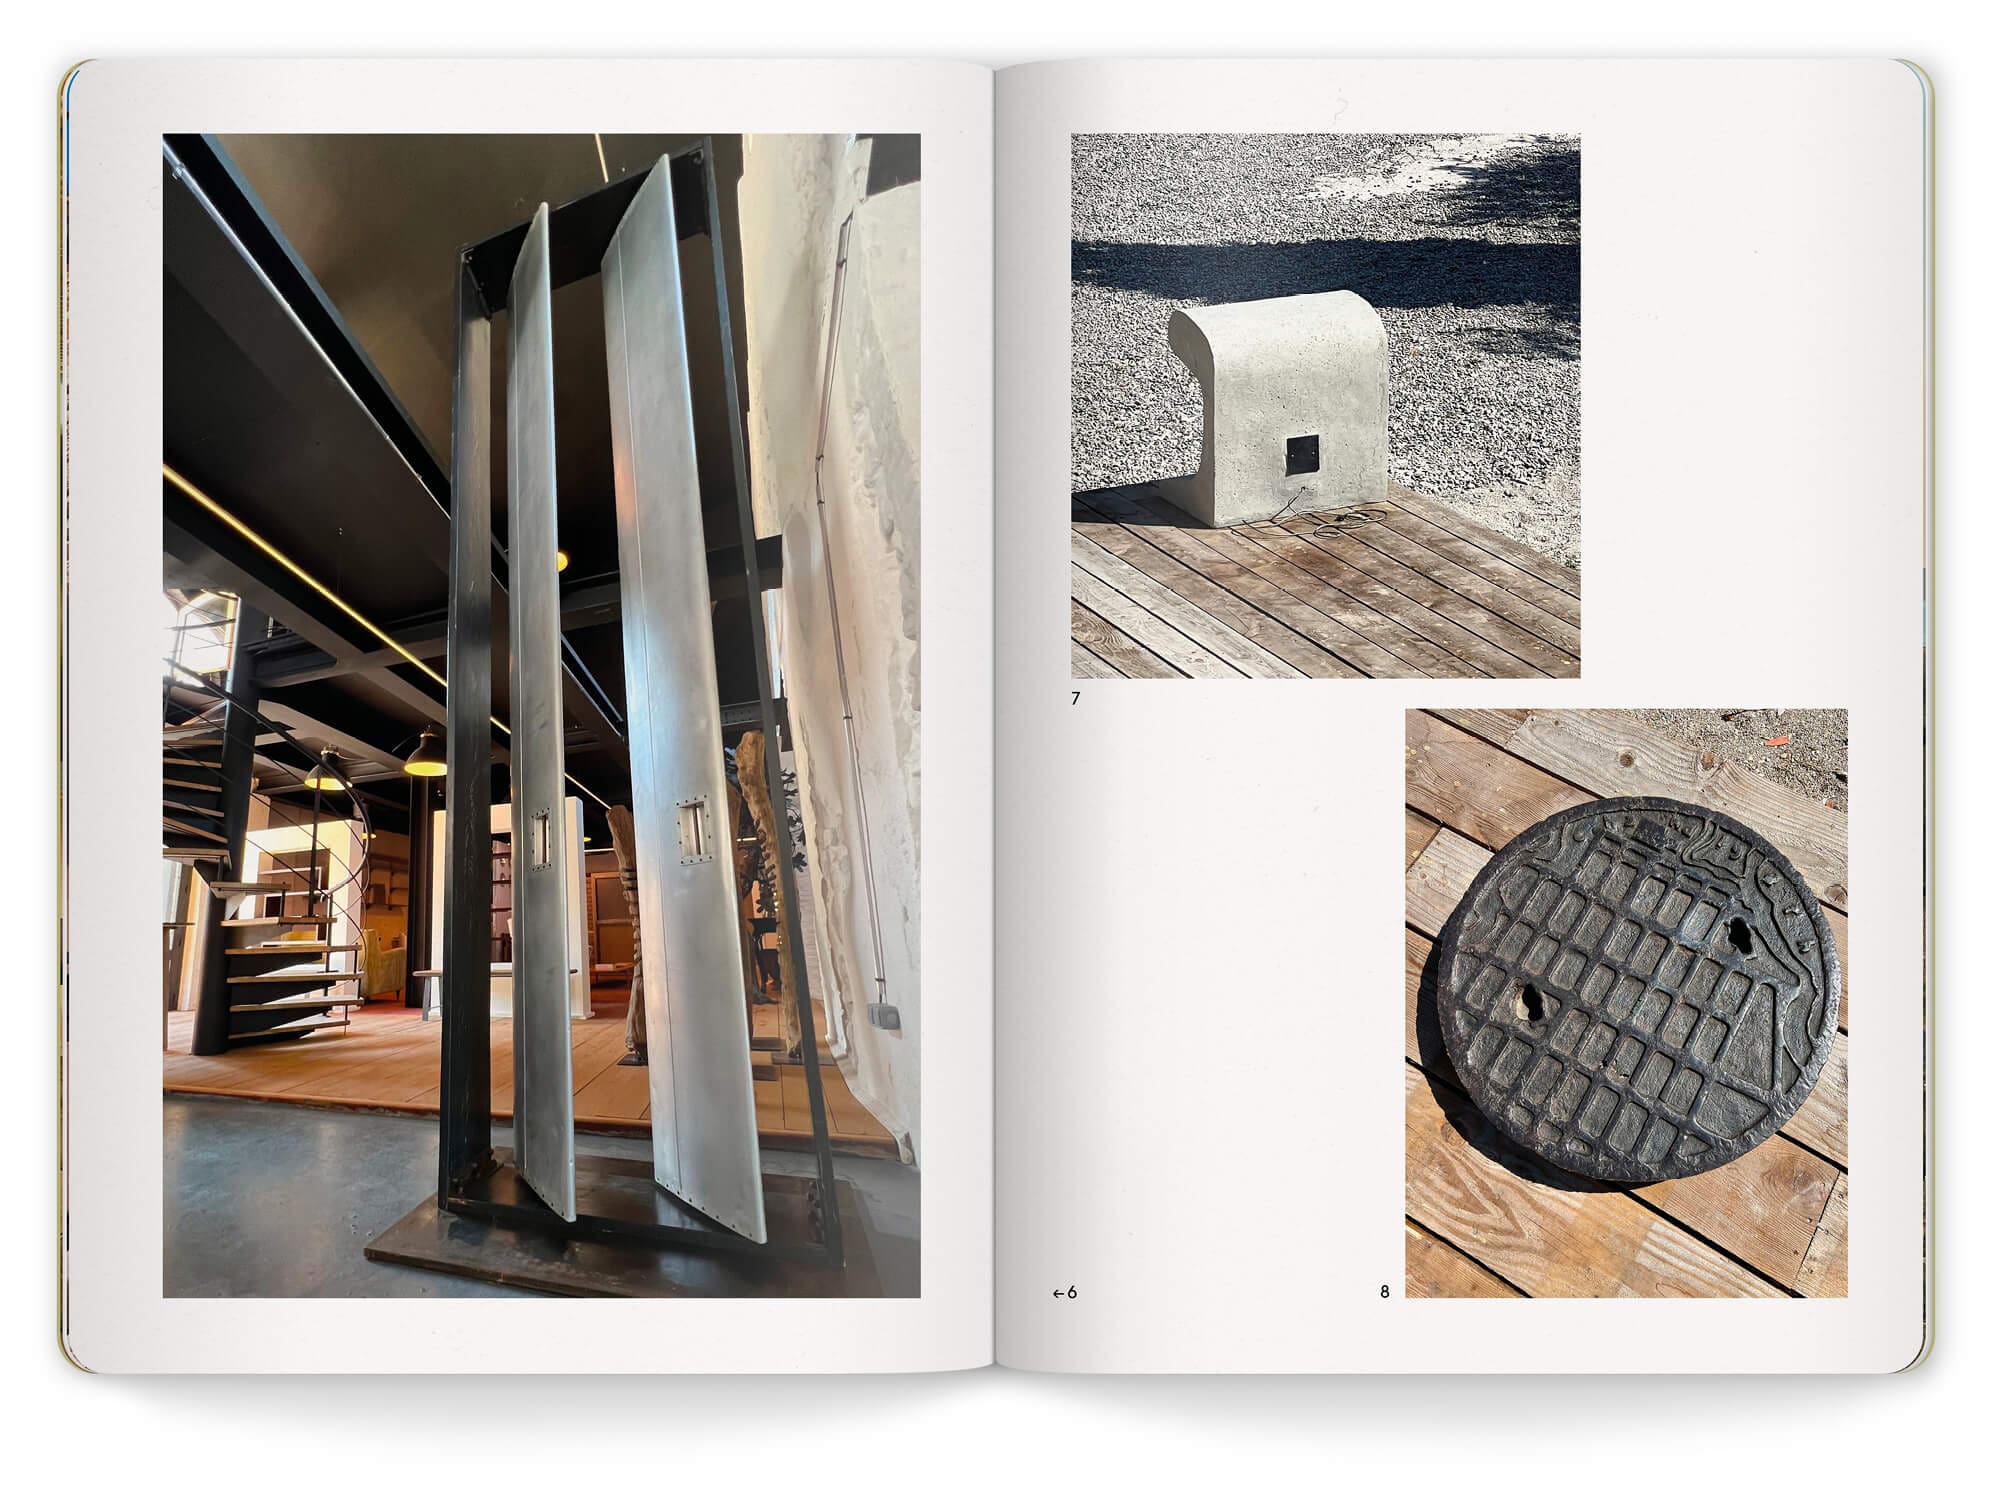 Ich&Kar met en page le livret de l'exposition de la Friche de l'escalette, double page de photos d'oeuvre d'art.